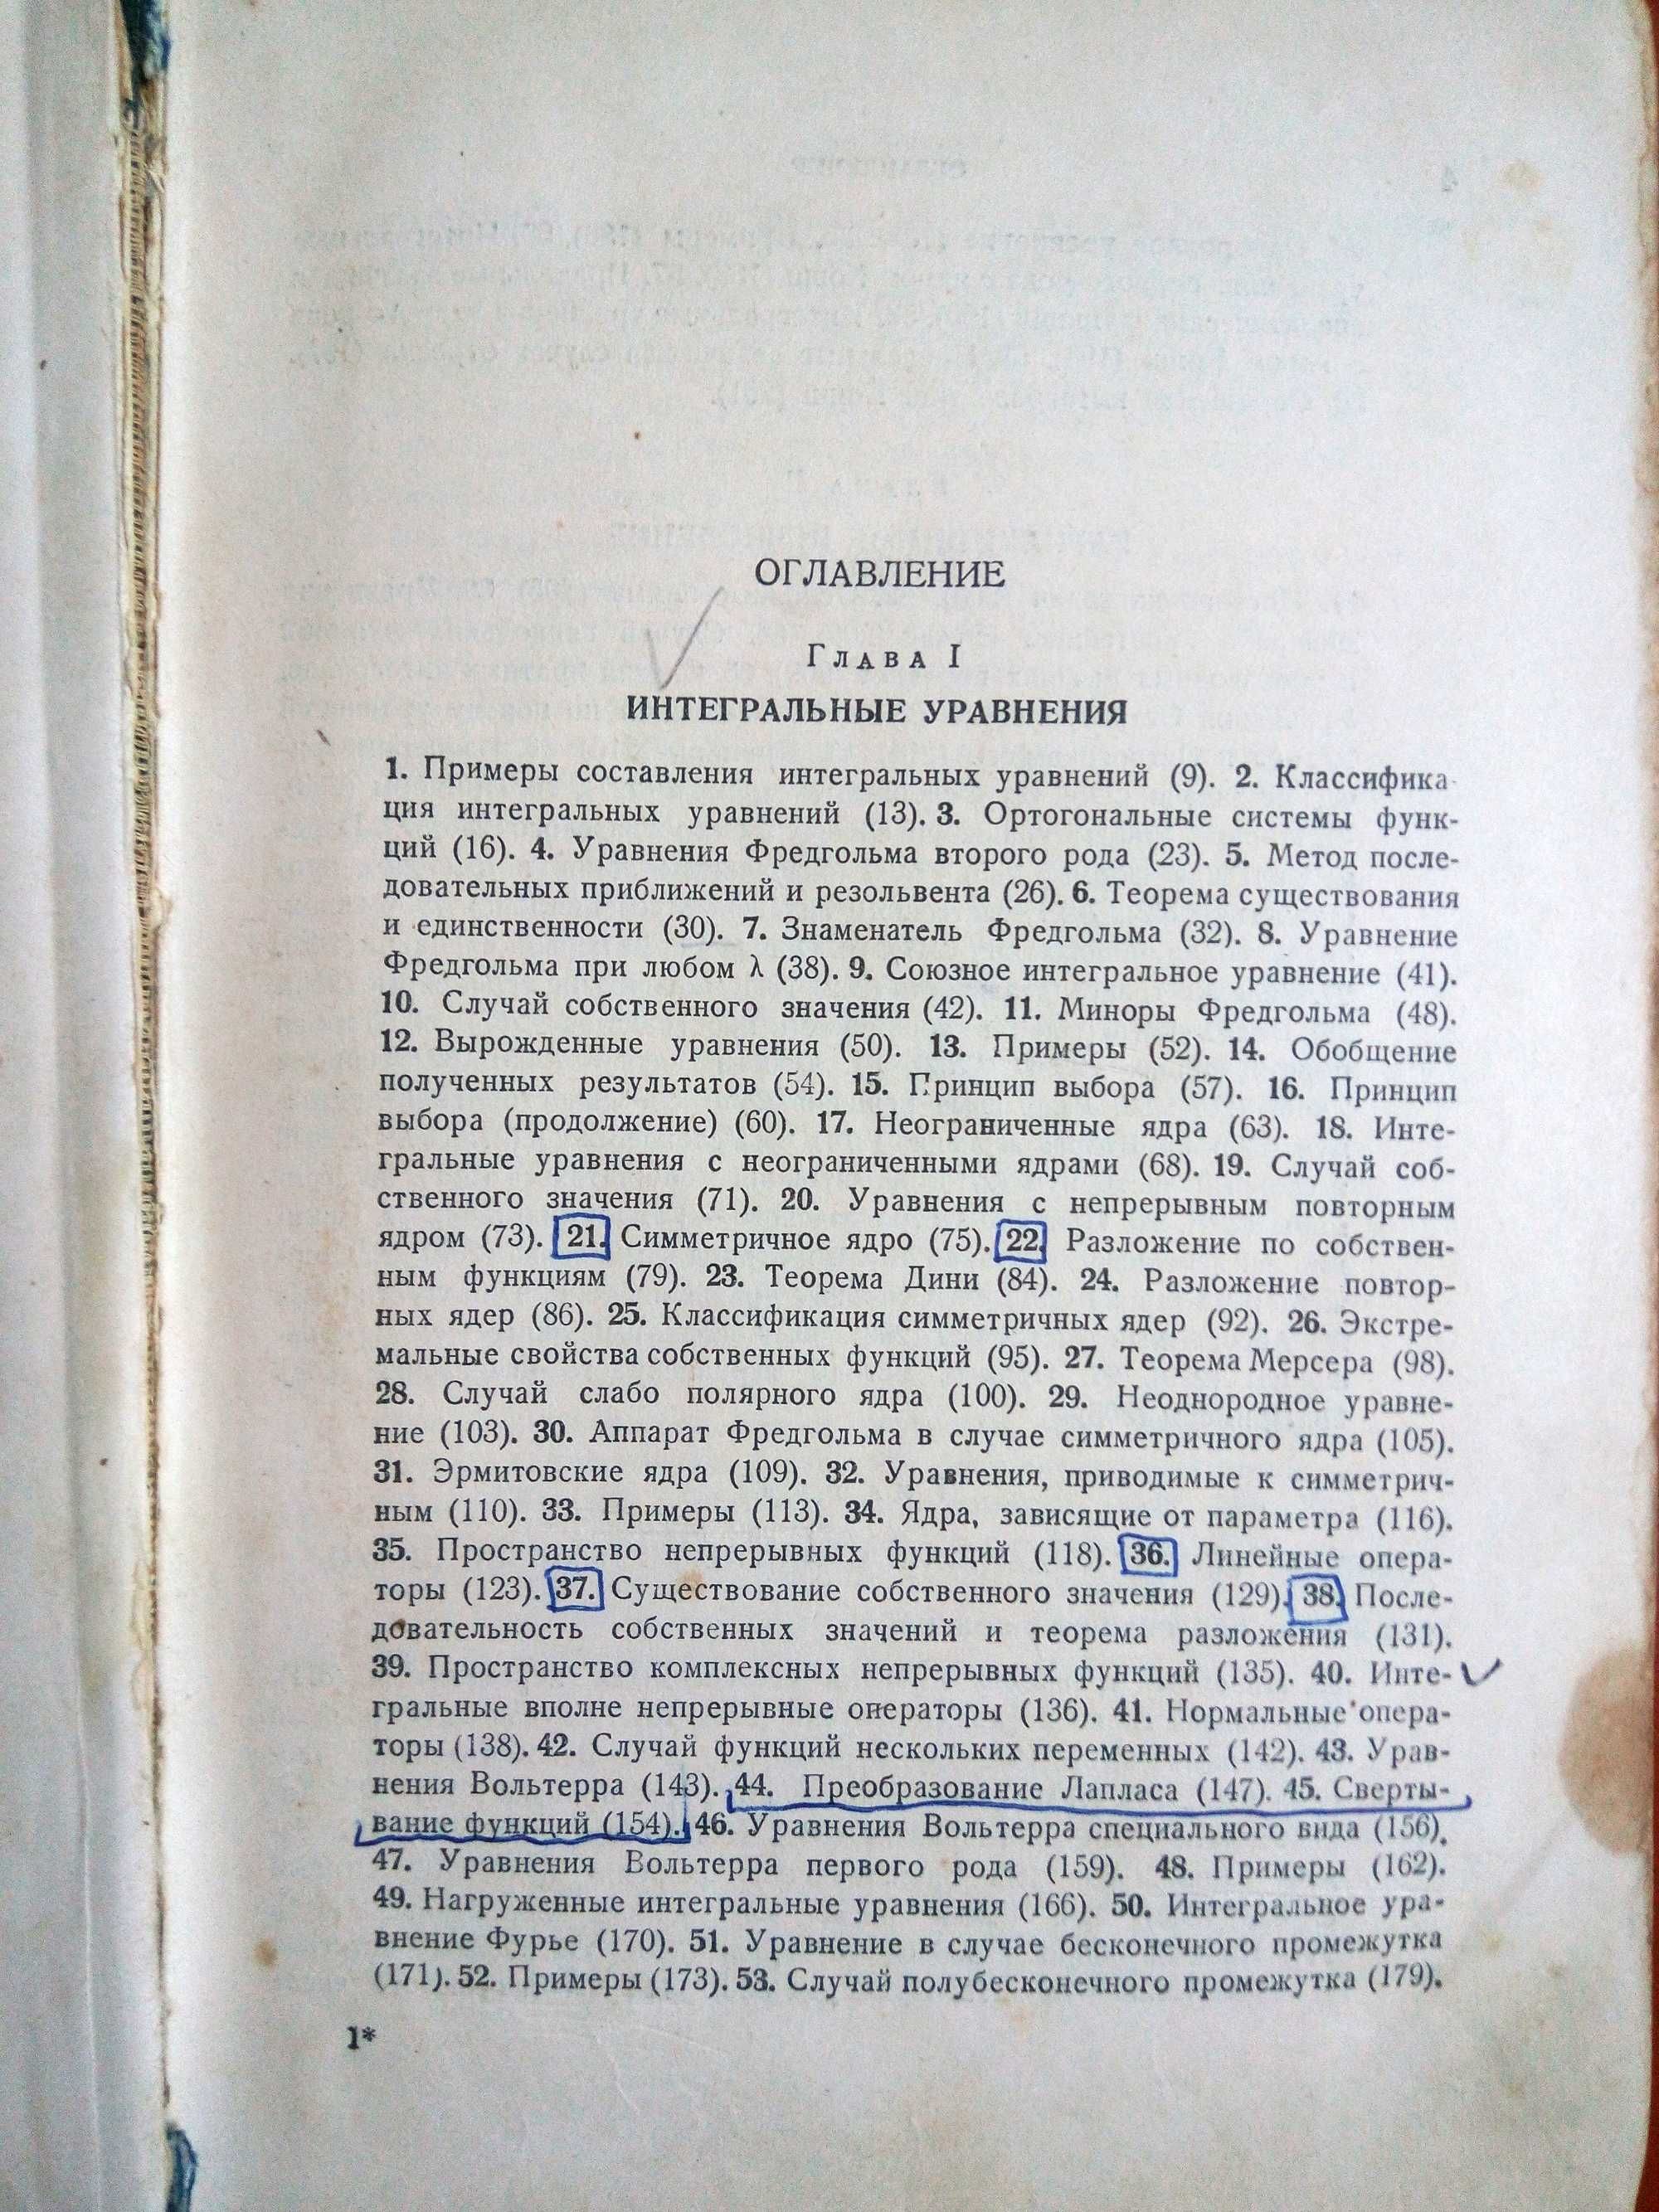 Курс Высшей Математики 4 том академик Смирнов 1953 г.